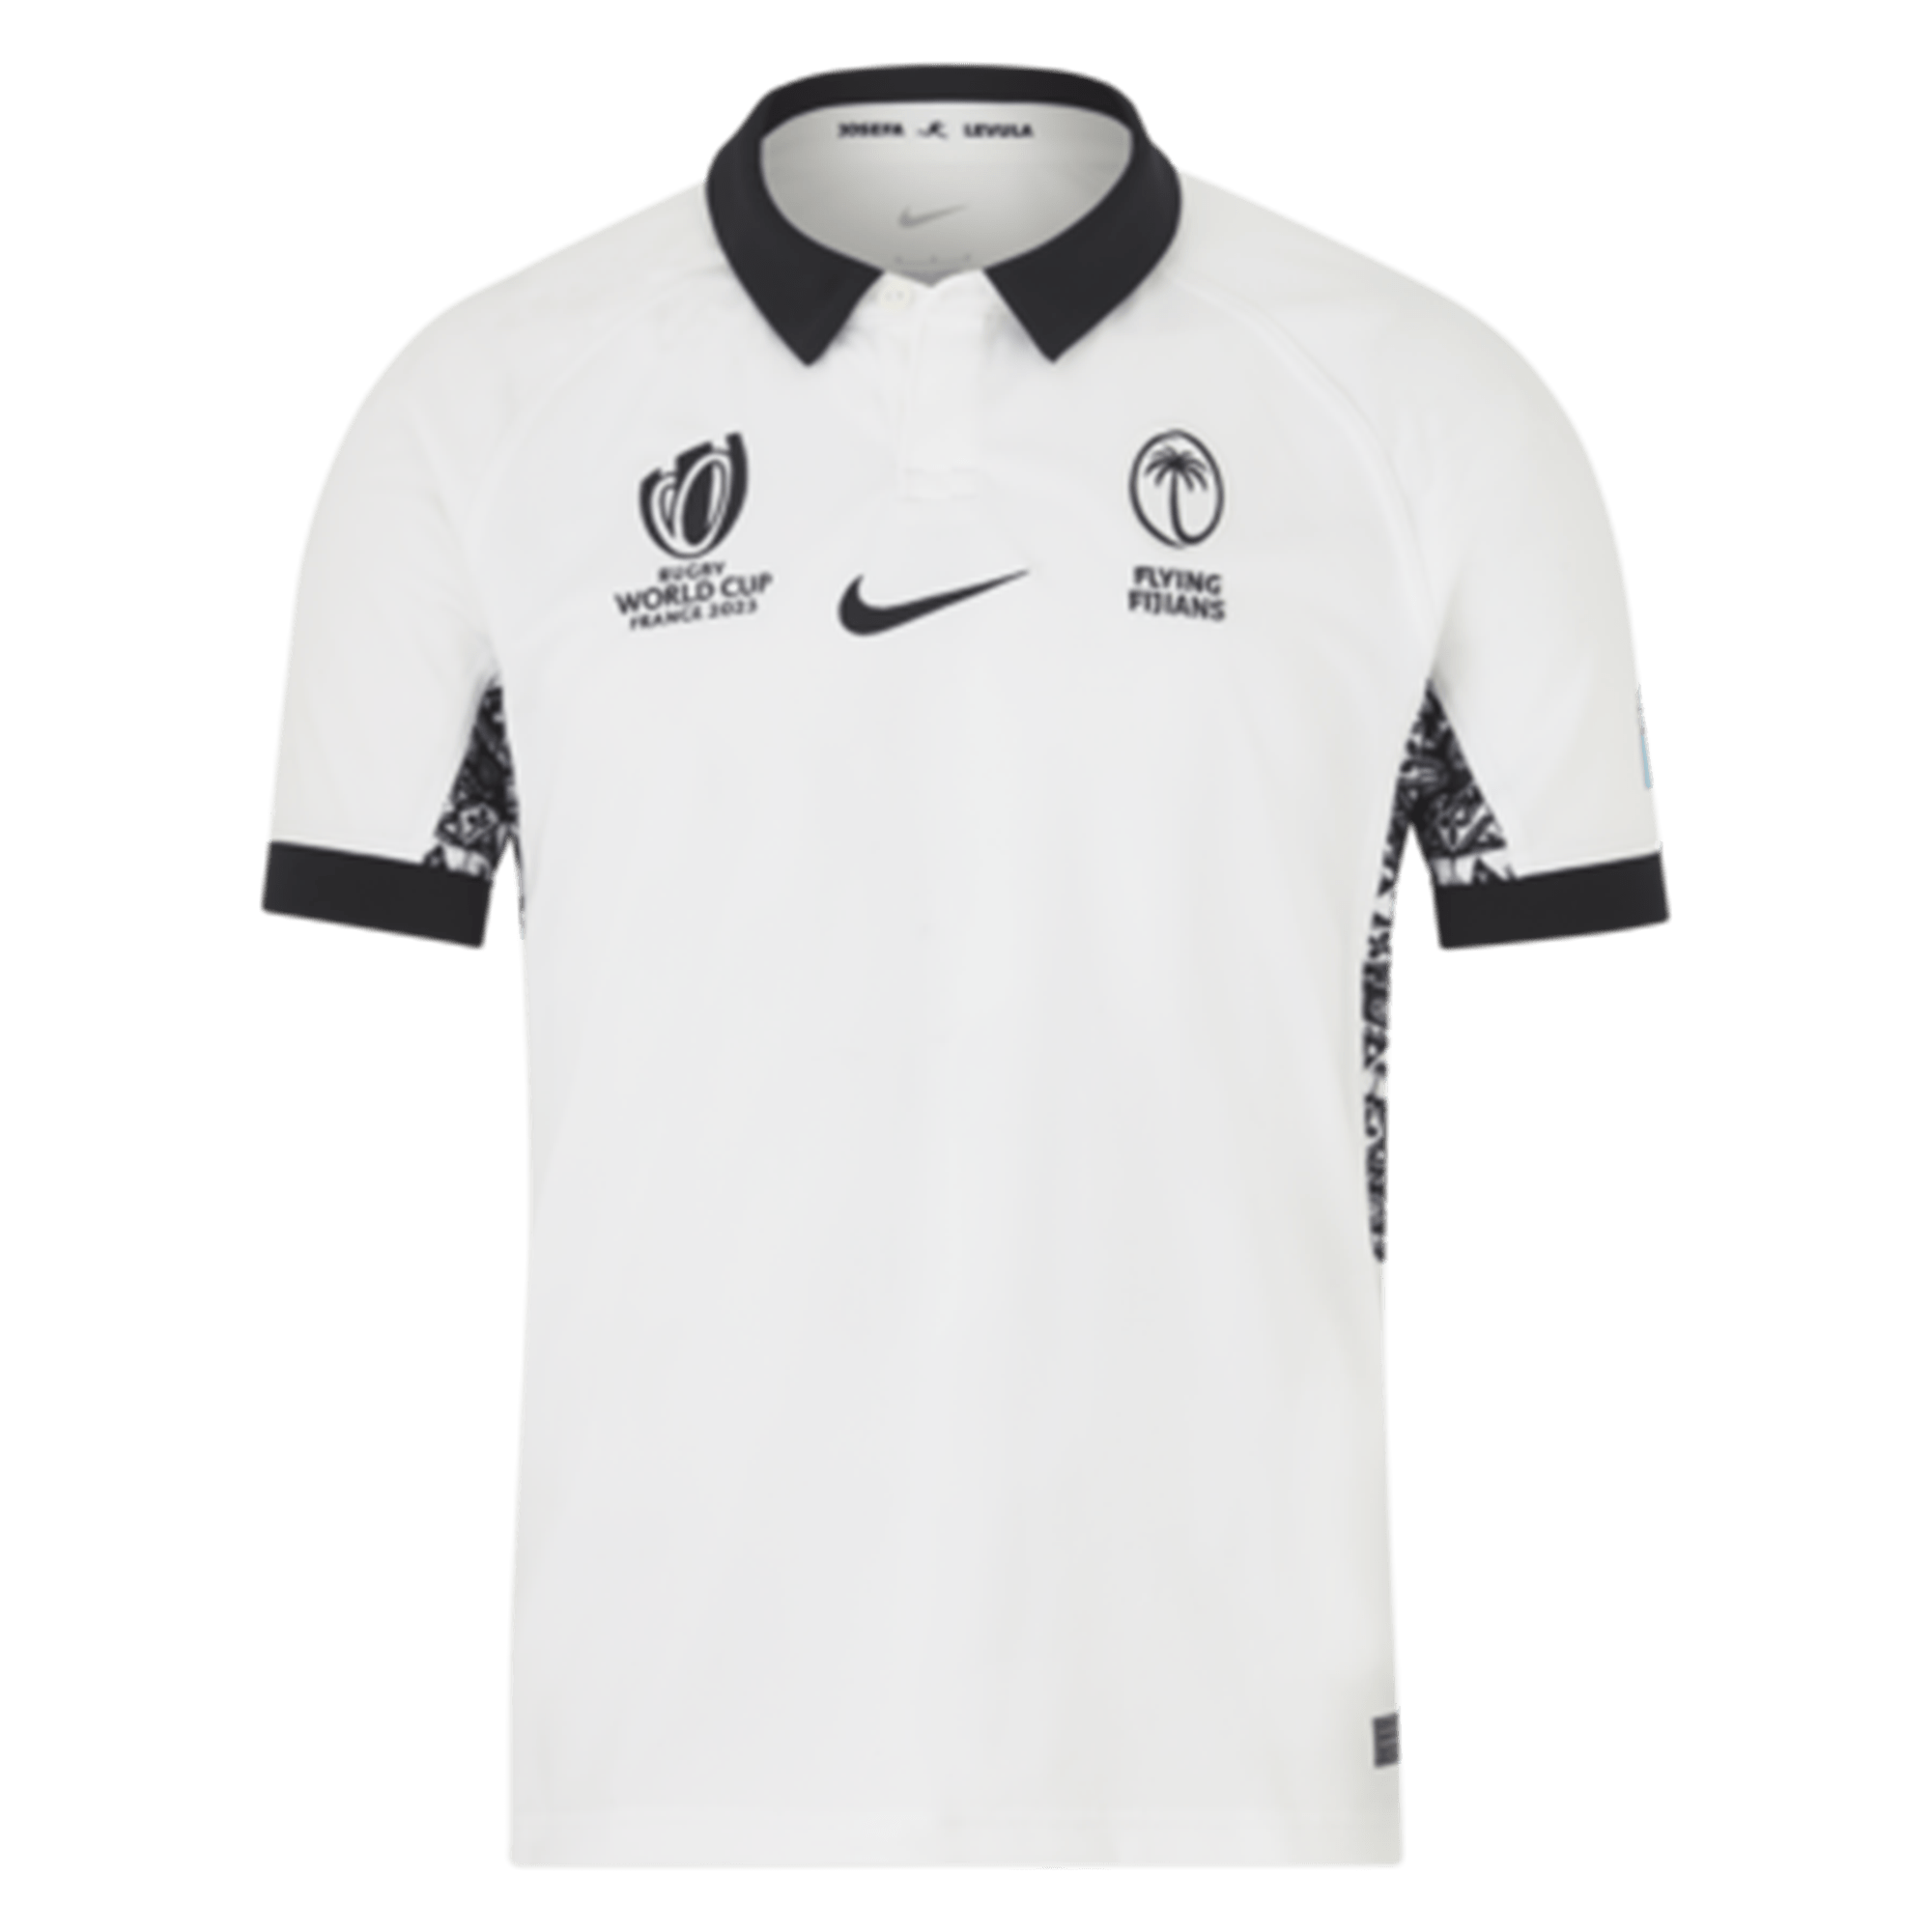 Official Venezuela Soccer Jersey & Gear